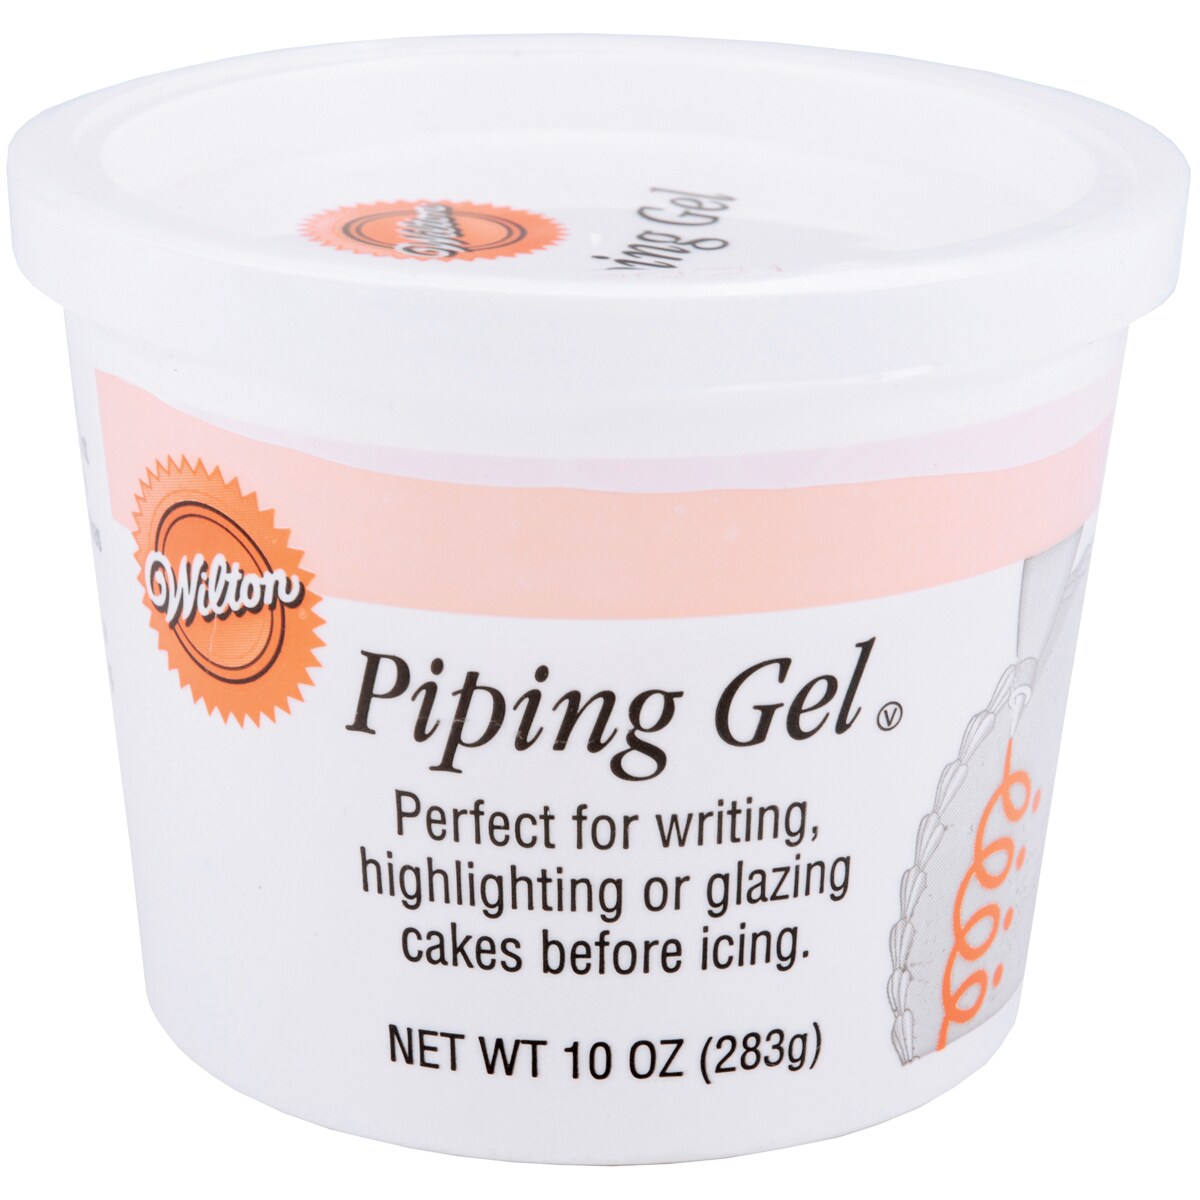 Wilton Clear Piping Gel, 10 oz